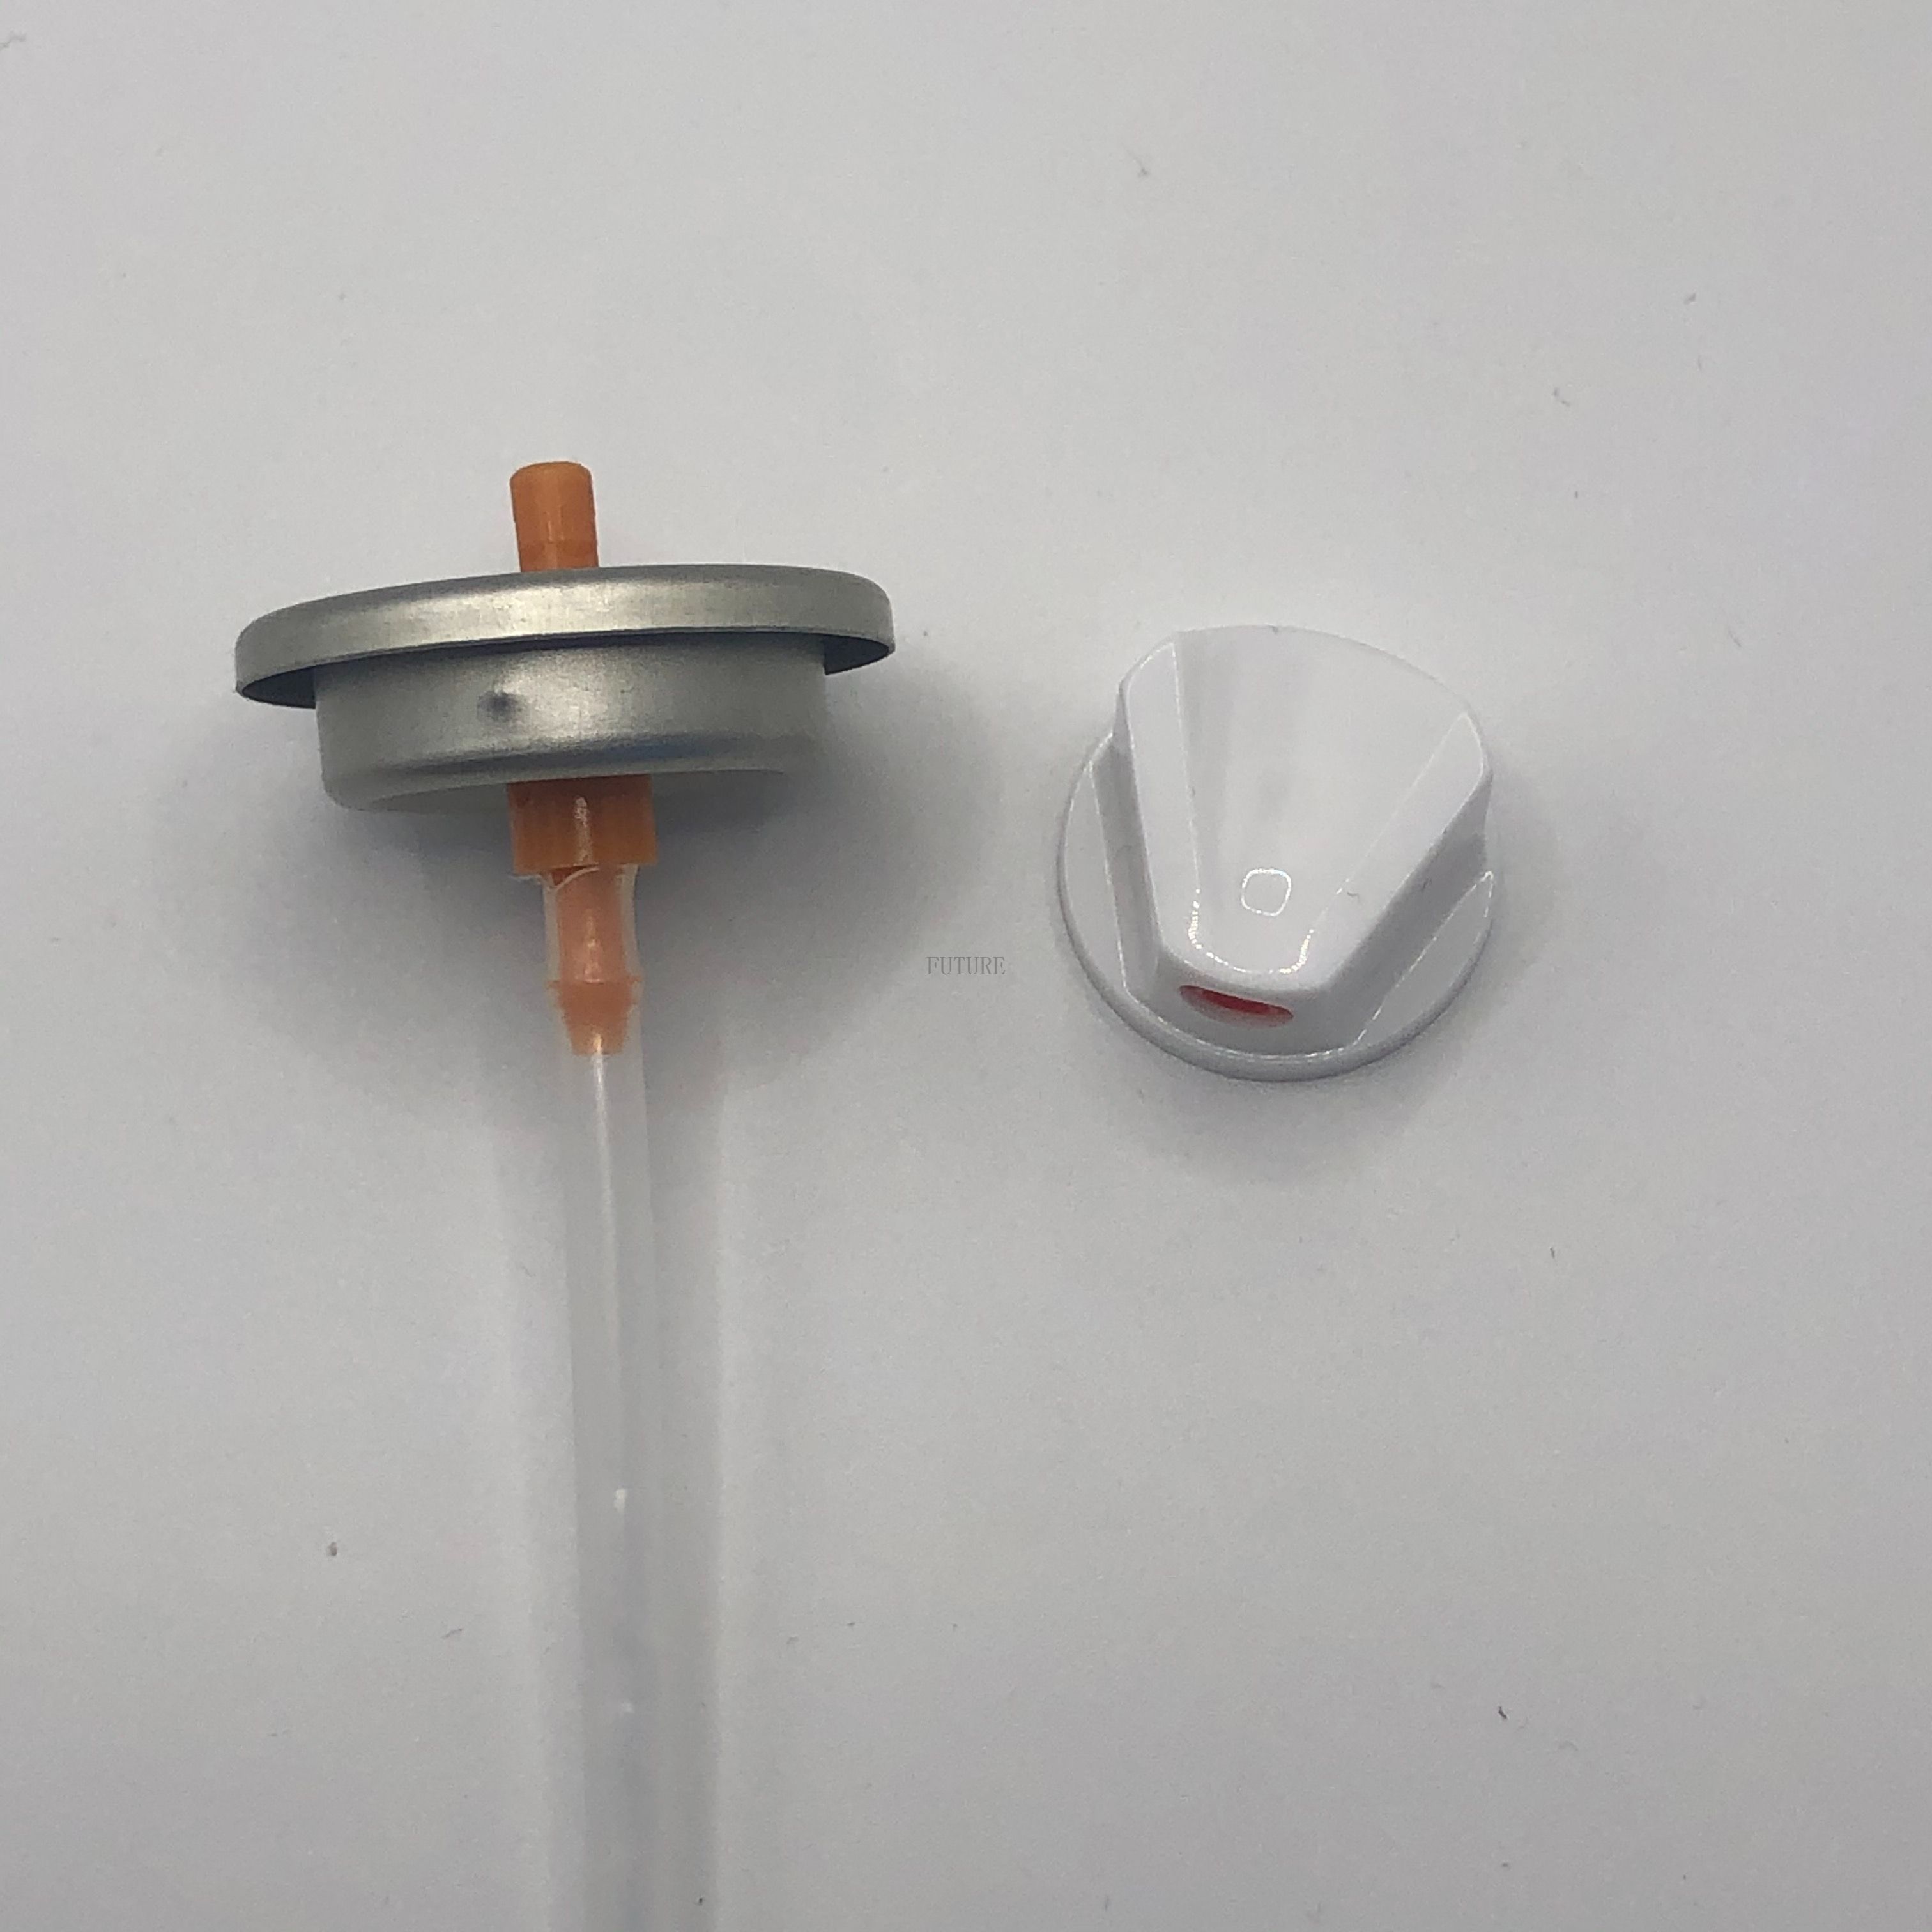 Controle de Spray de Precisão: Introdução à nossa válvula de pulverização de tinta para obter resultados precisos